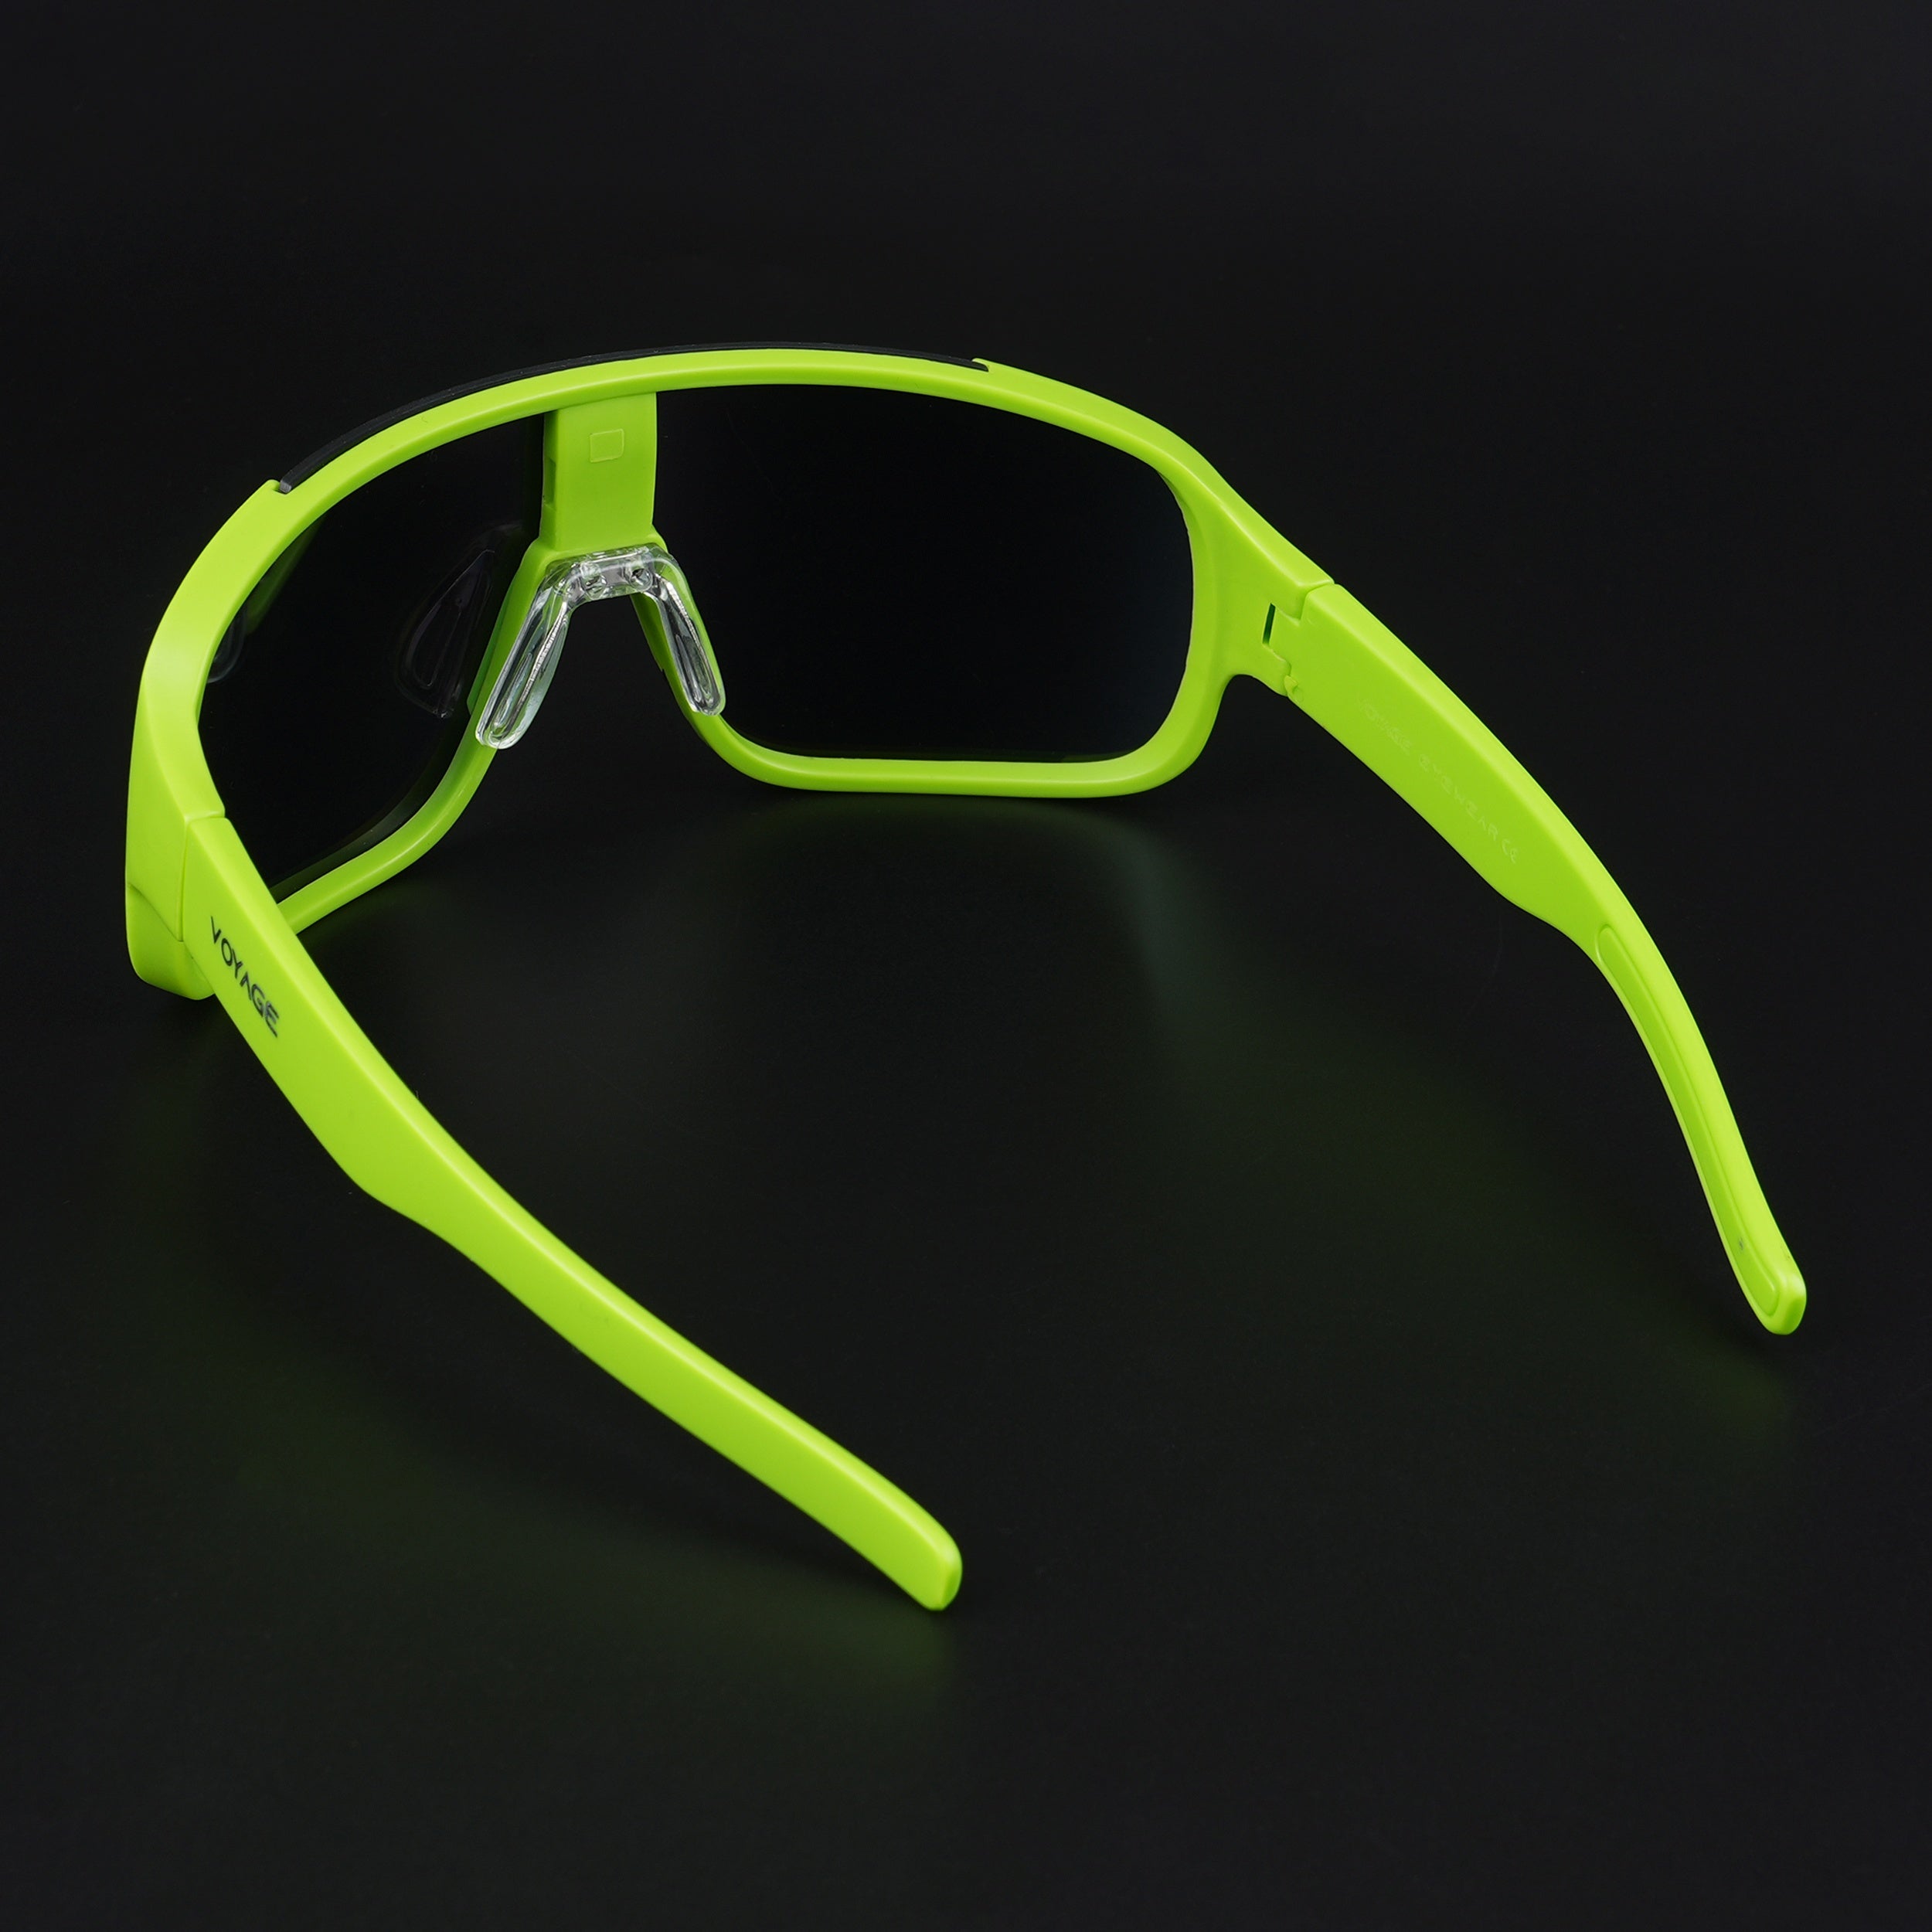 Voyage Drift Sunglasses for Men & Women (Multicolor Lens | Green Frame - MG5518)